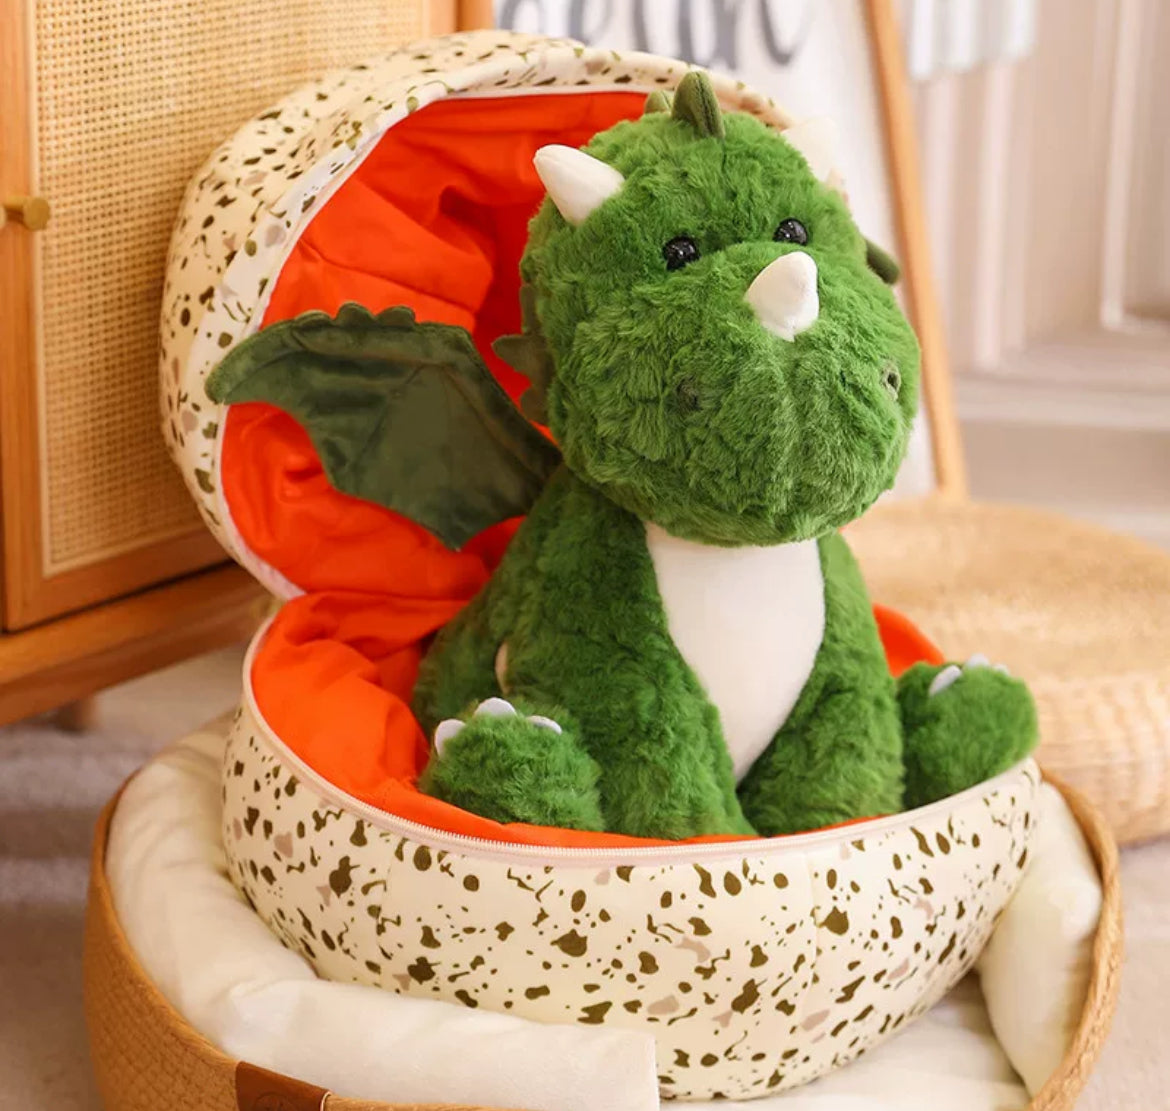 Cute Dinosaur Plush Toy